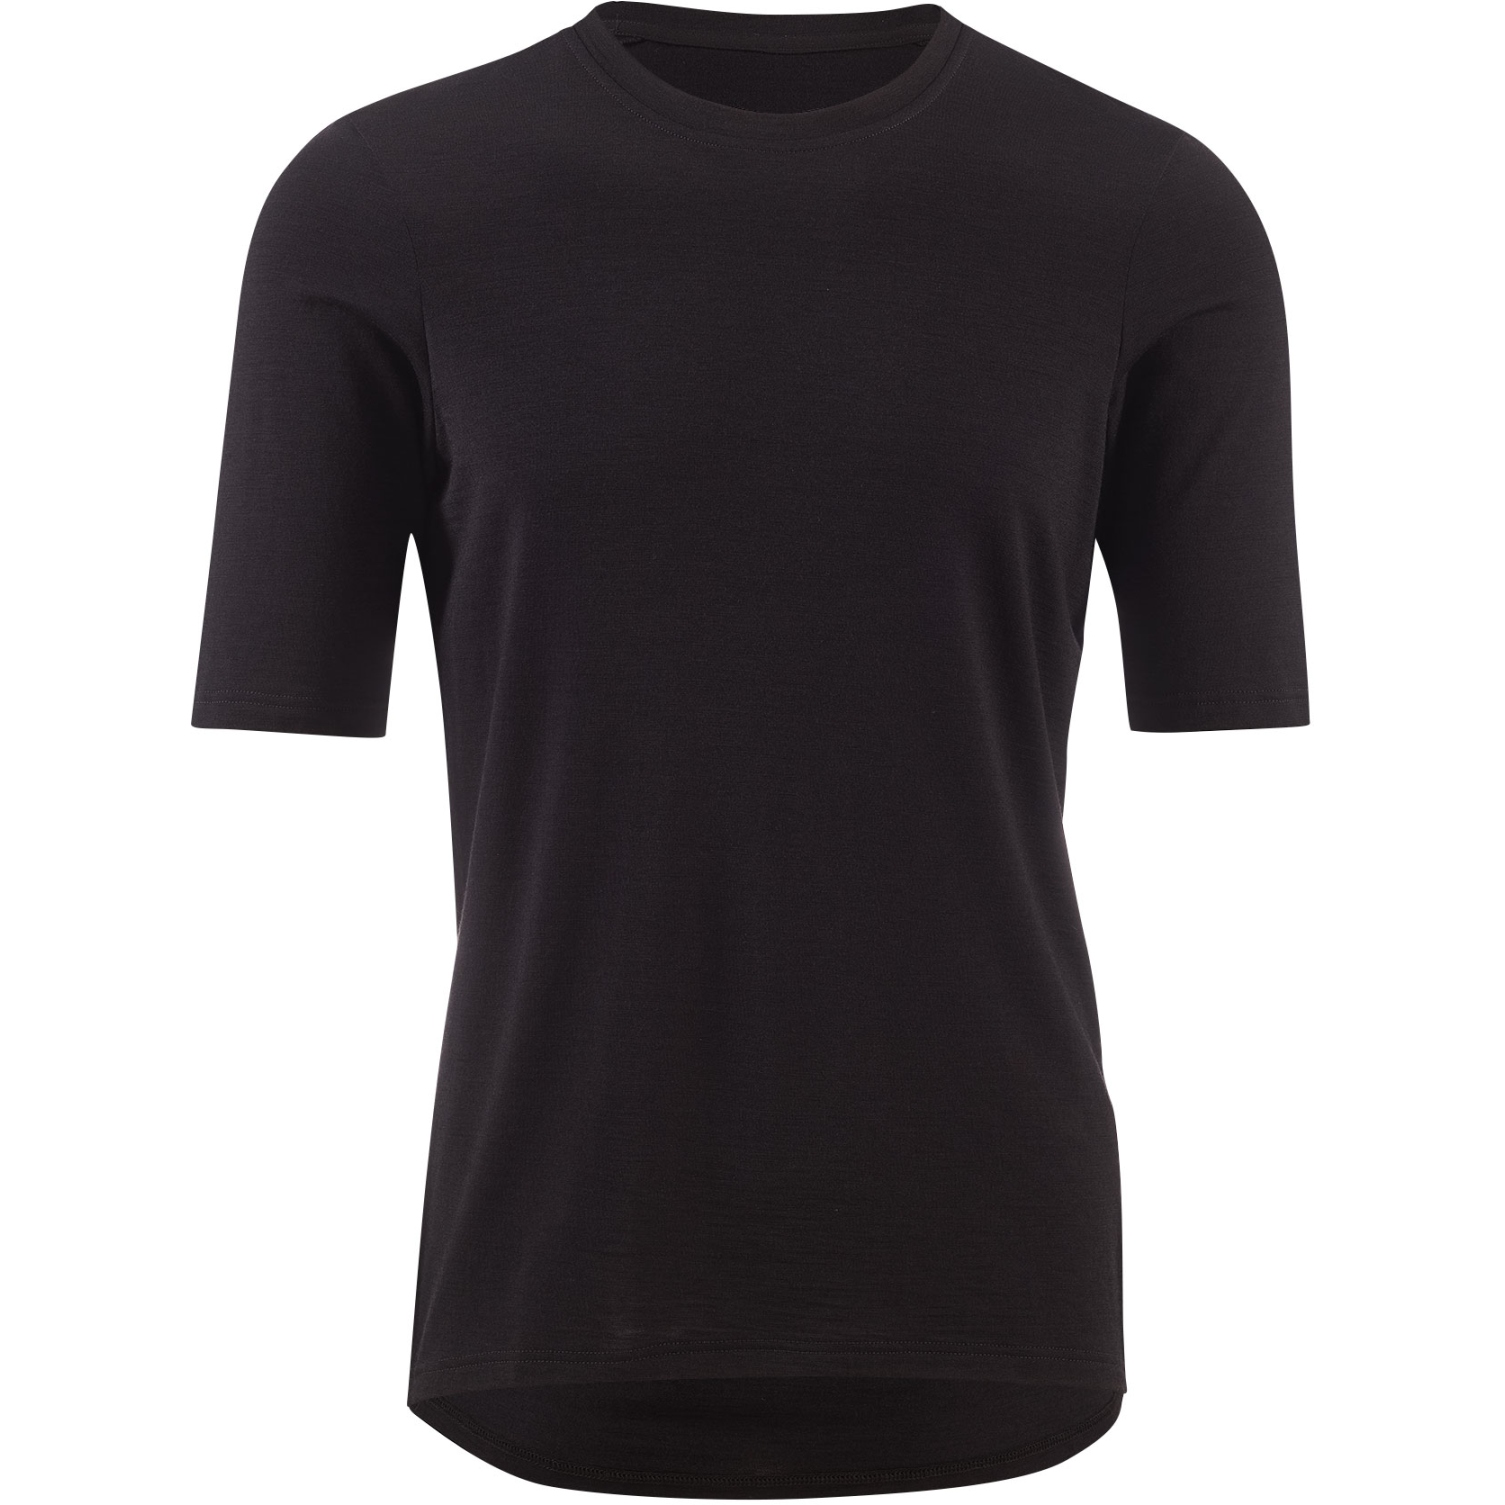 Produktbild von Velocio Merino Trail Herren T-Shirt - Schwarz